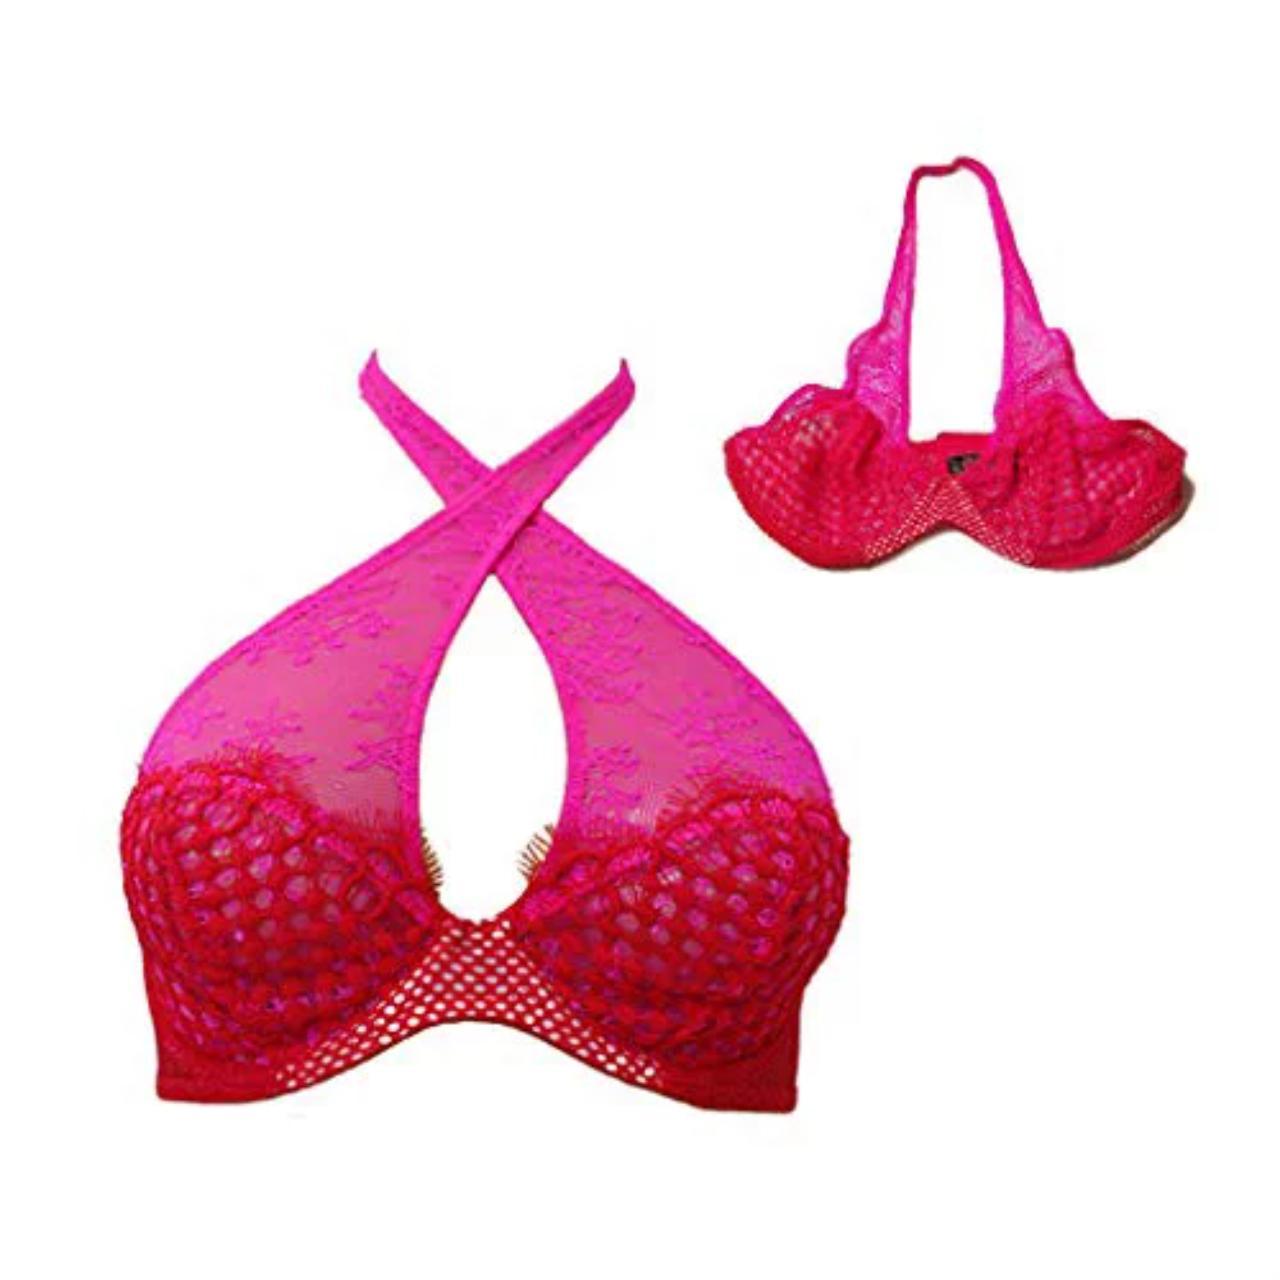 Victoria's Secret Halter Bra Red/Pink, 36C, Sexy - Depop